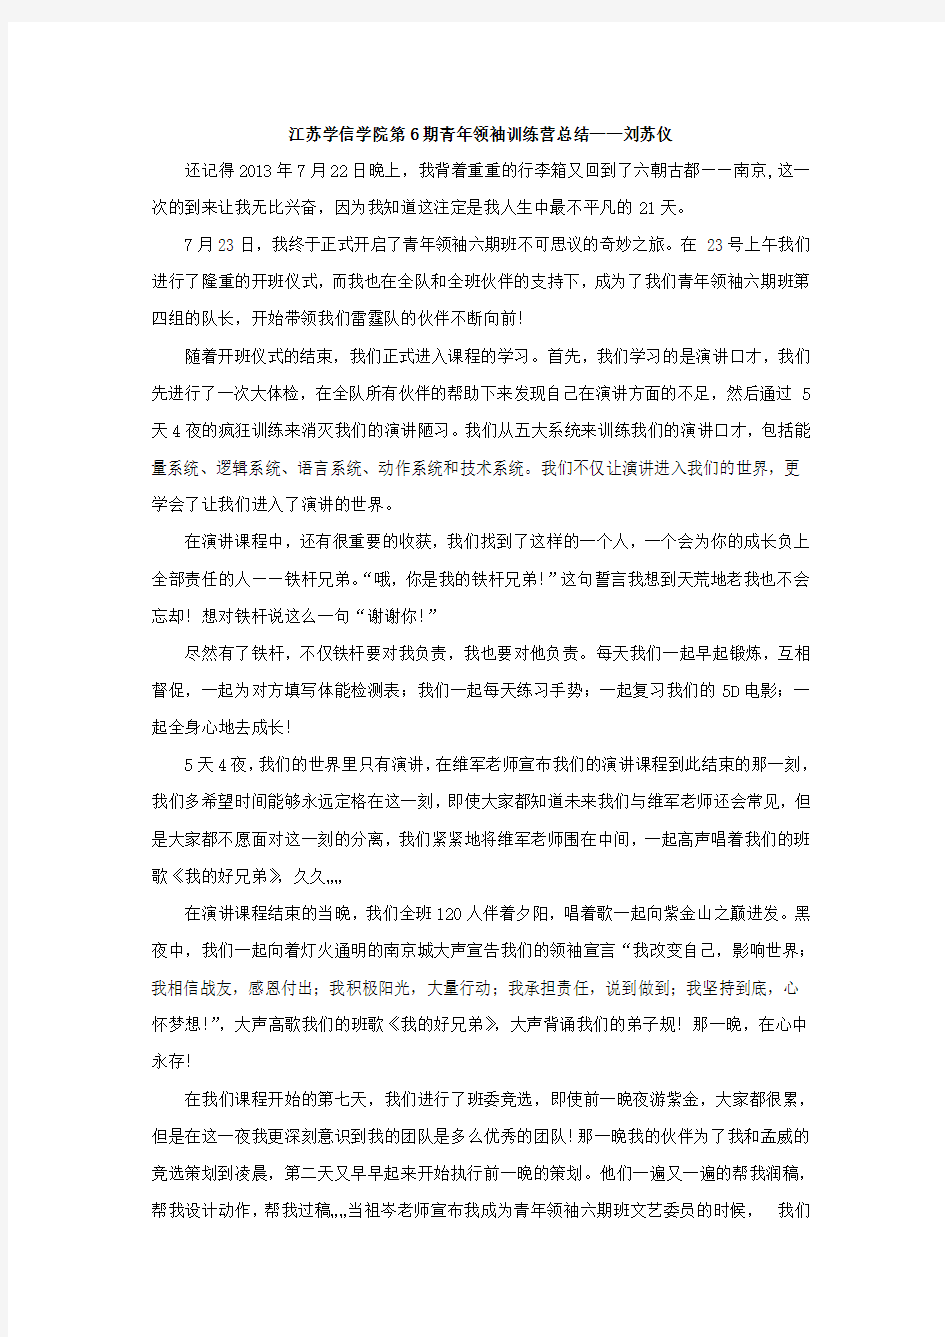 江苏学信学院第6期青年领袖训练营总结——刘苏仪